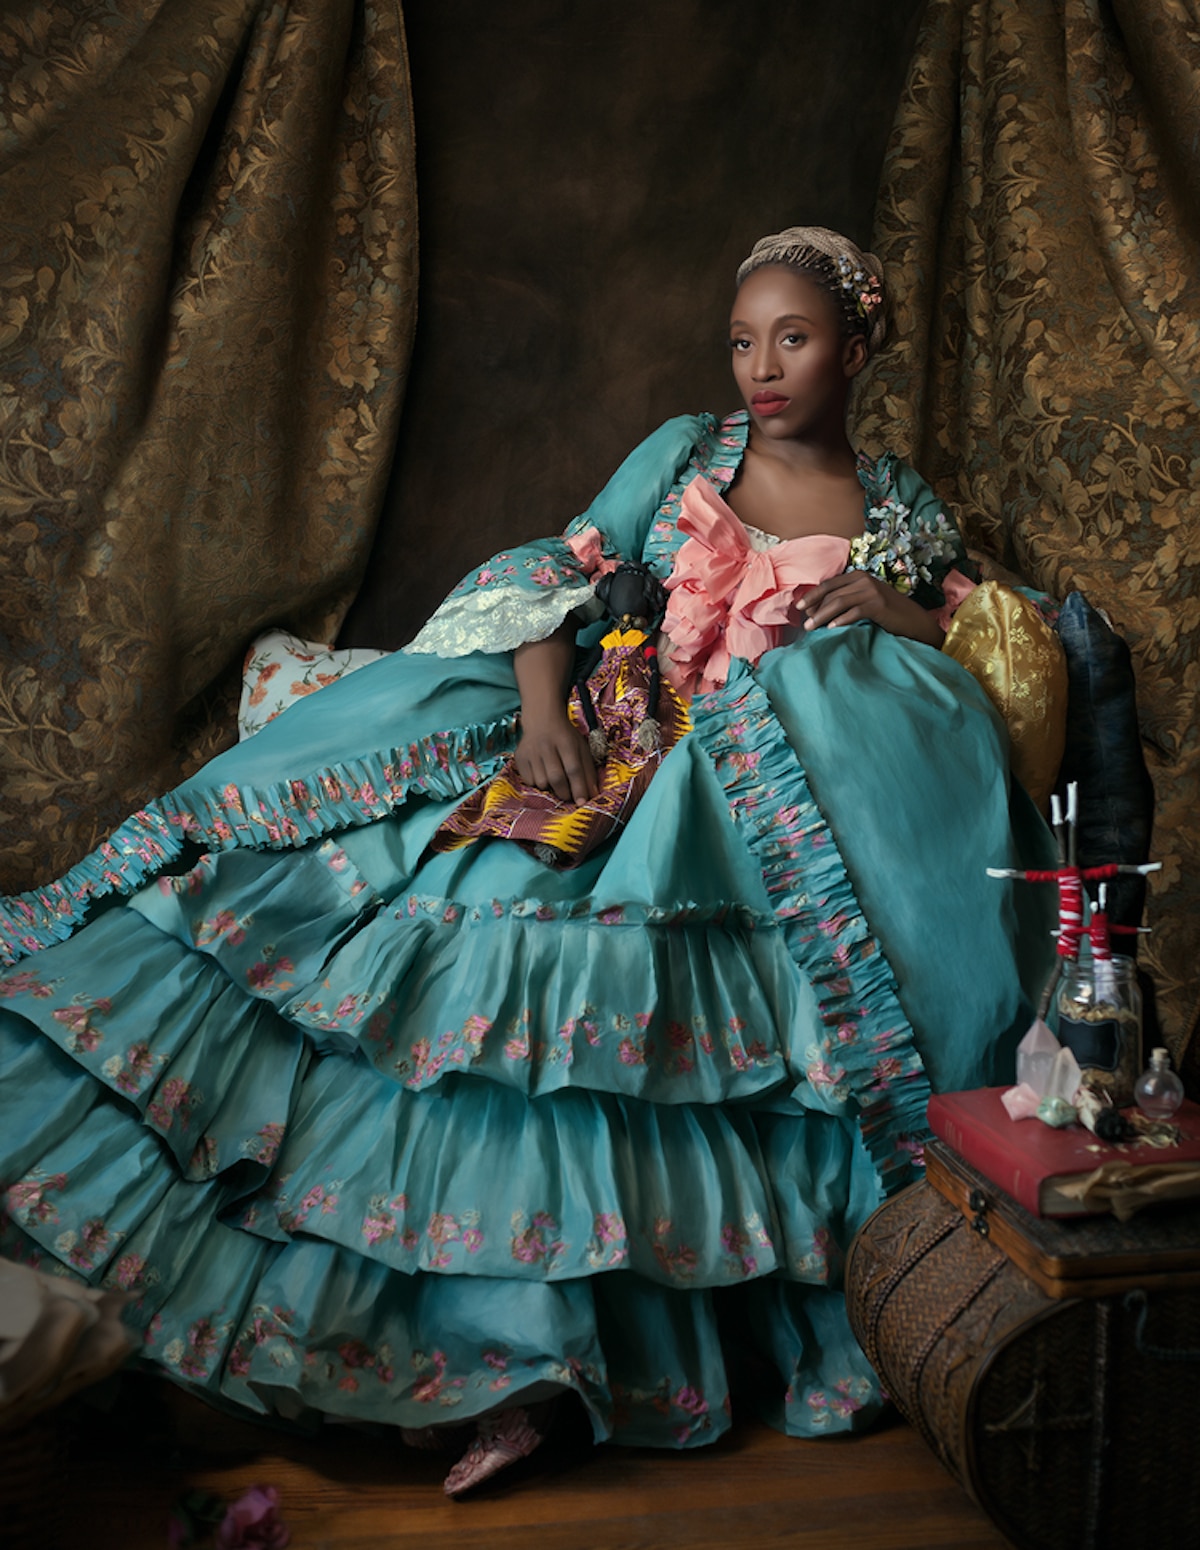 Fabiola Jean-Louis Haitian Photographer